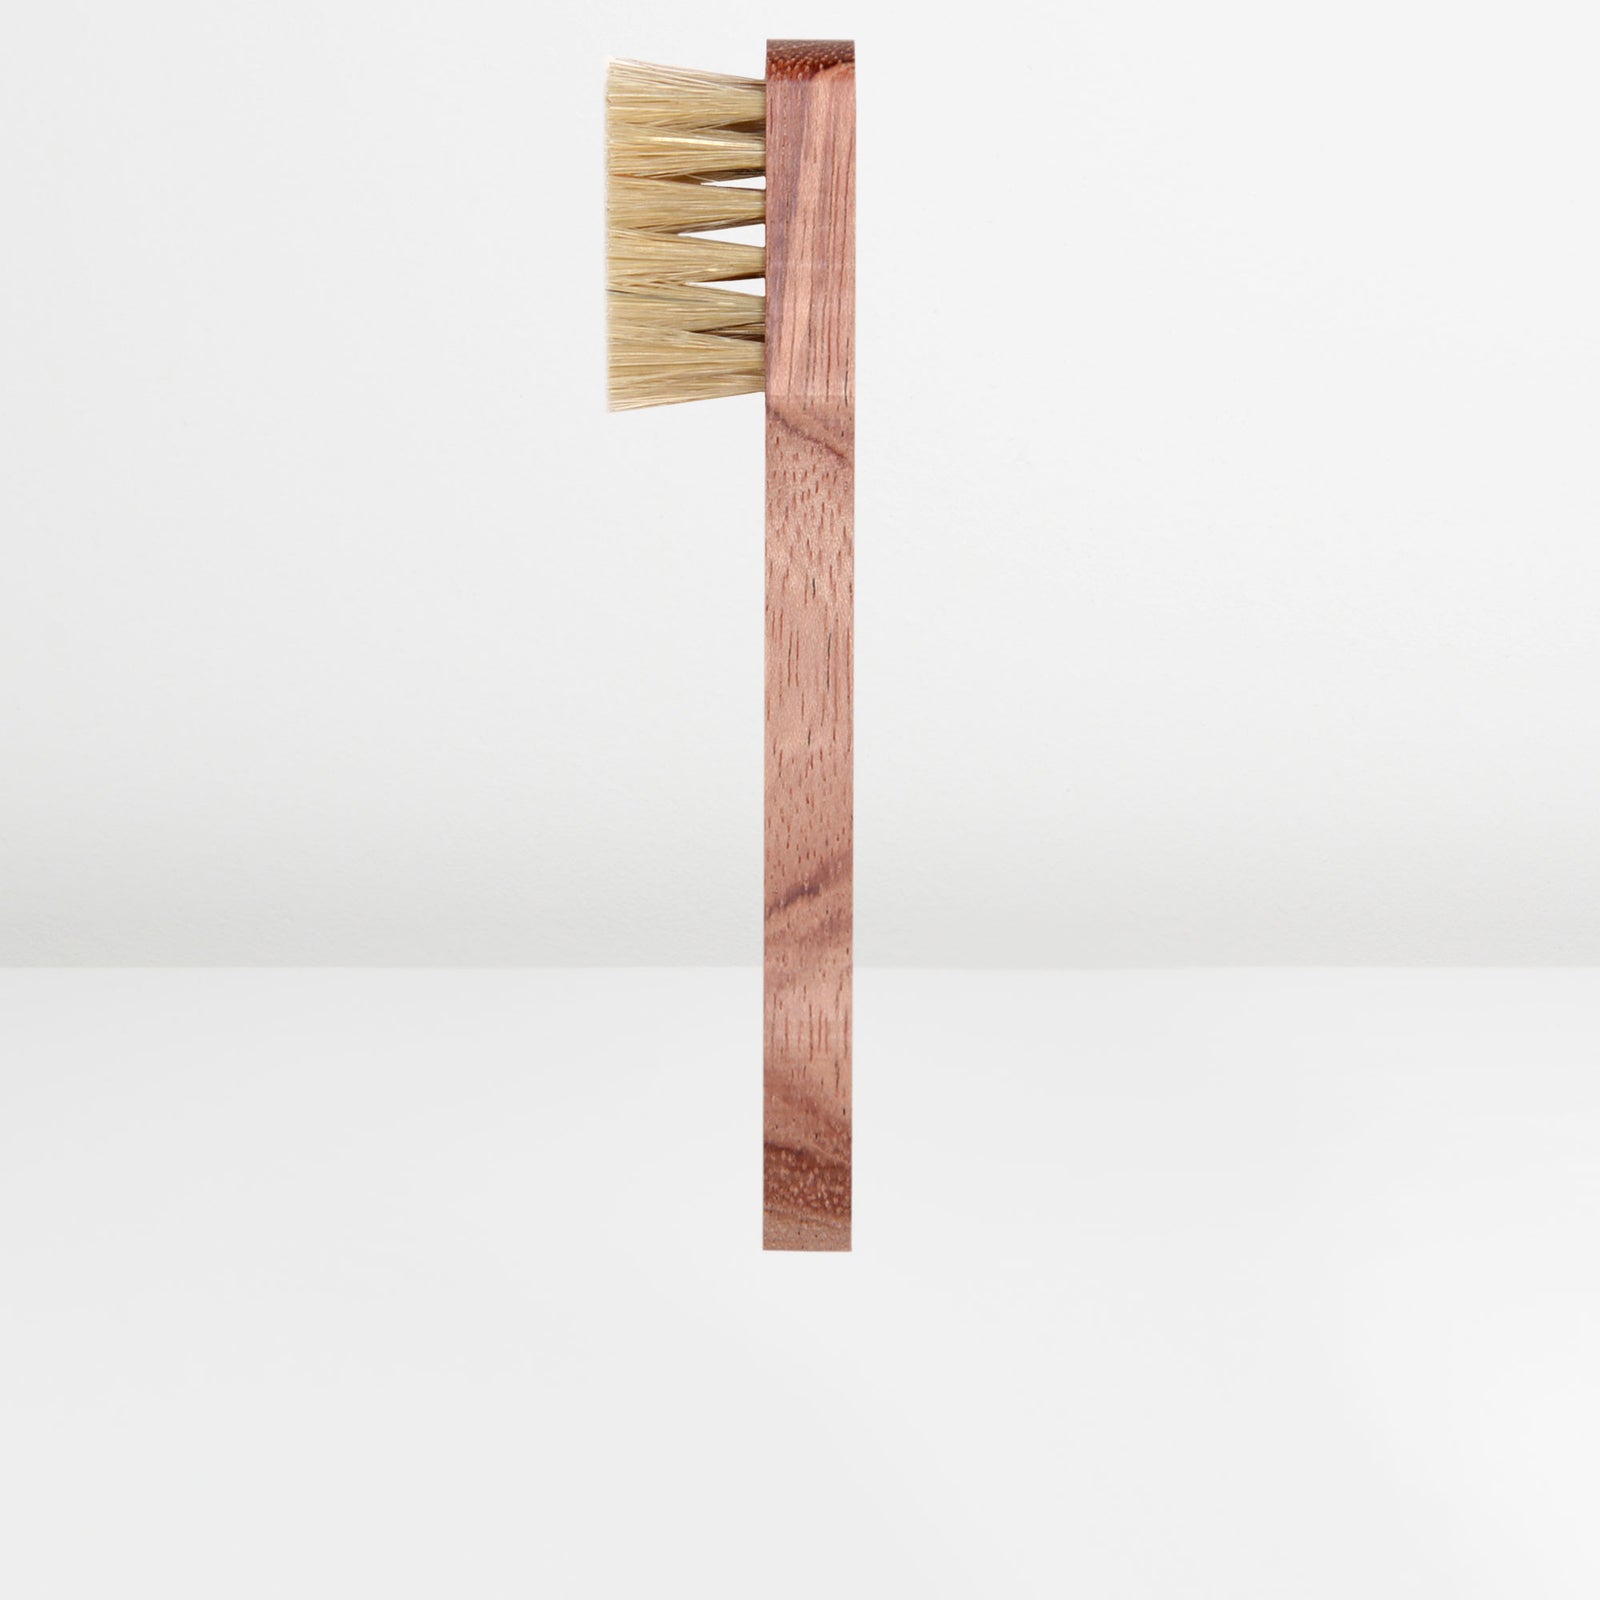 Etaleur Wooden Brush